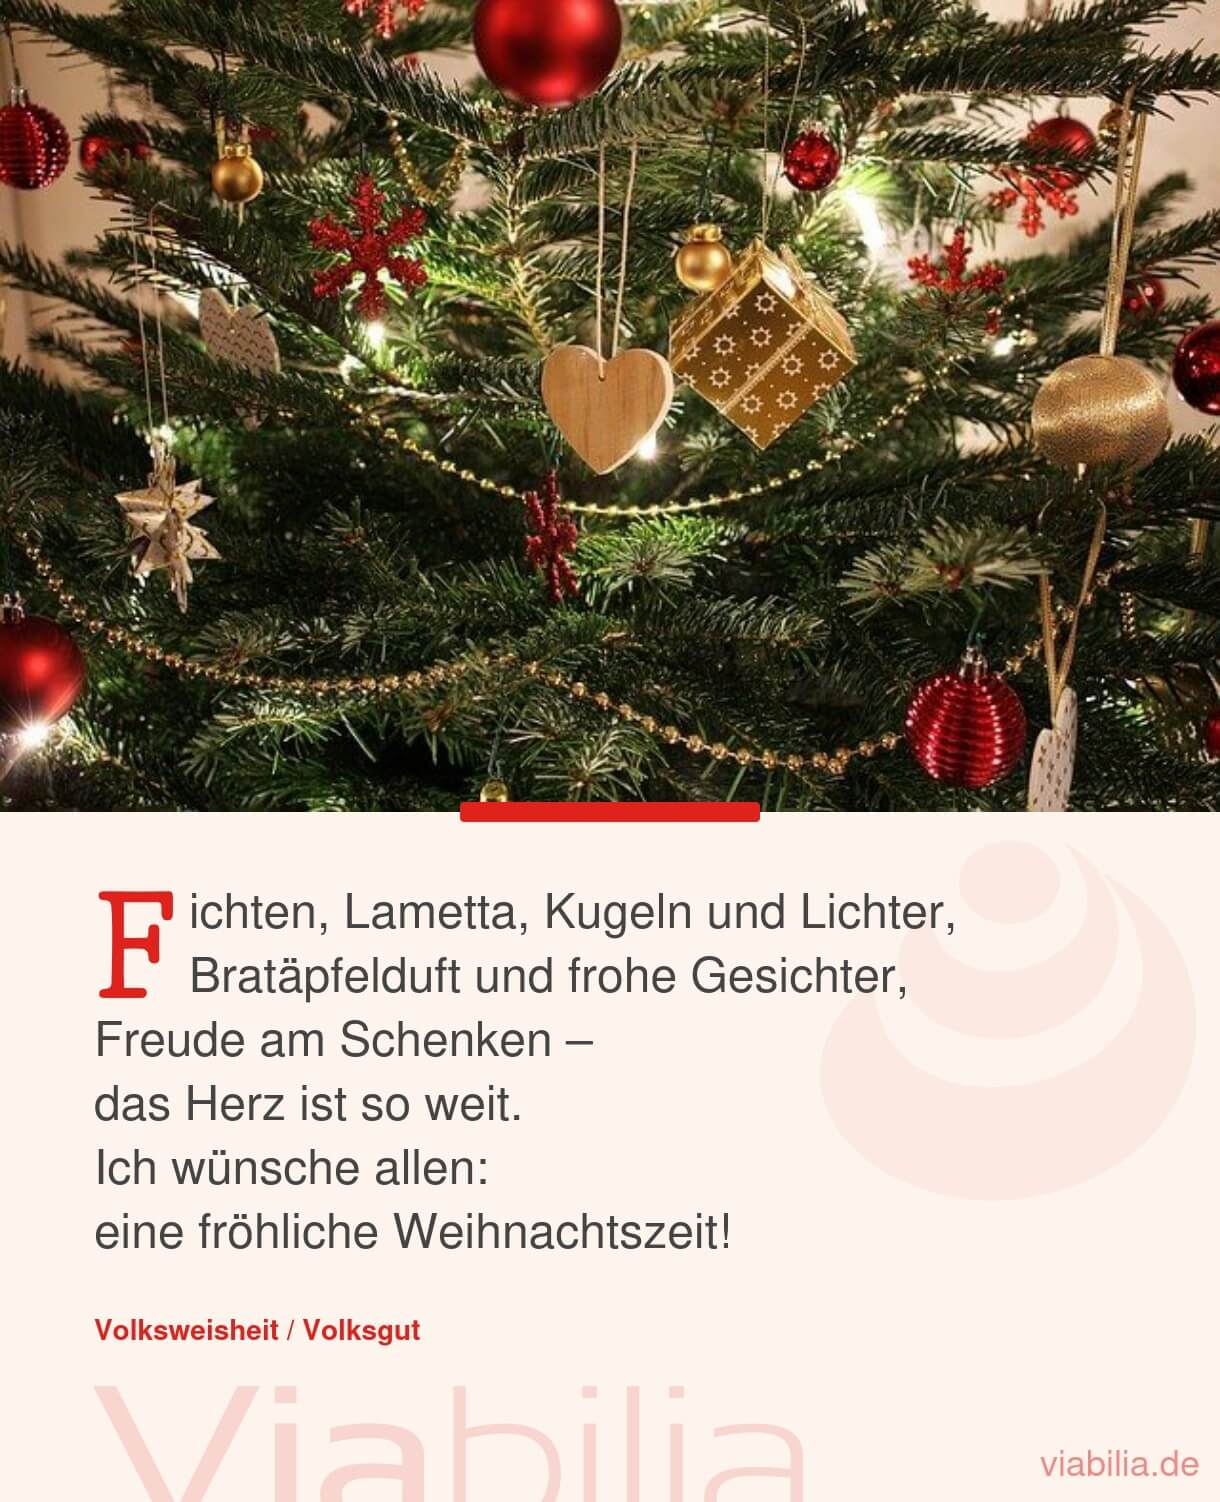 Besinnliche Weihnachtsgrüße über Lametta und Lichter